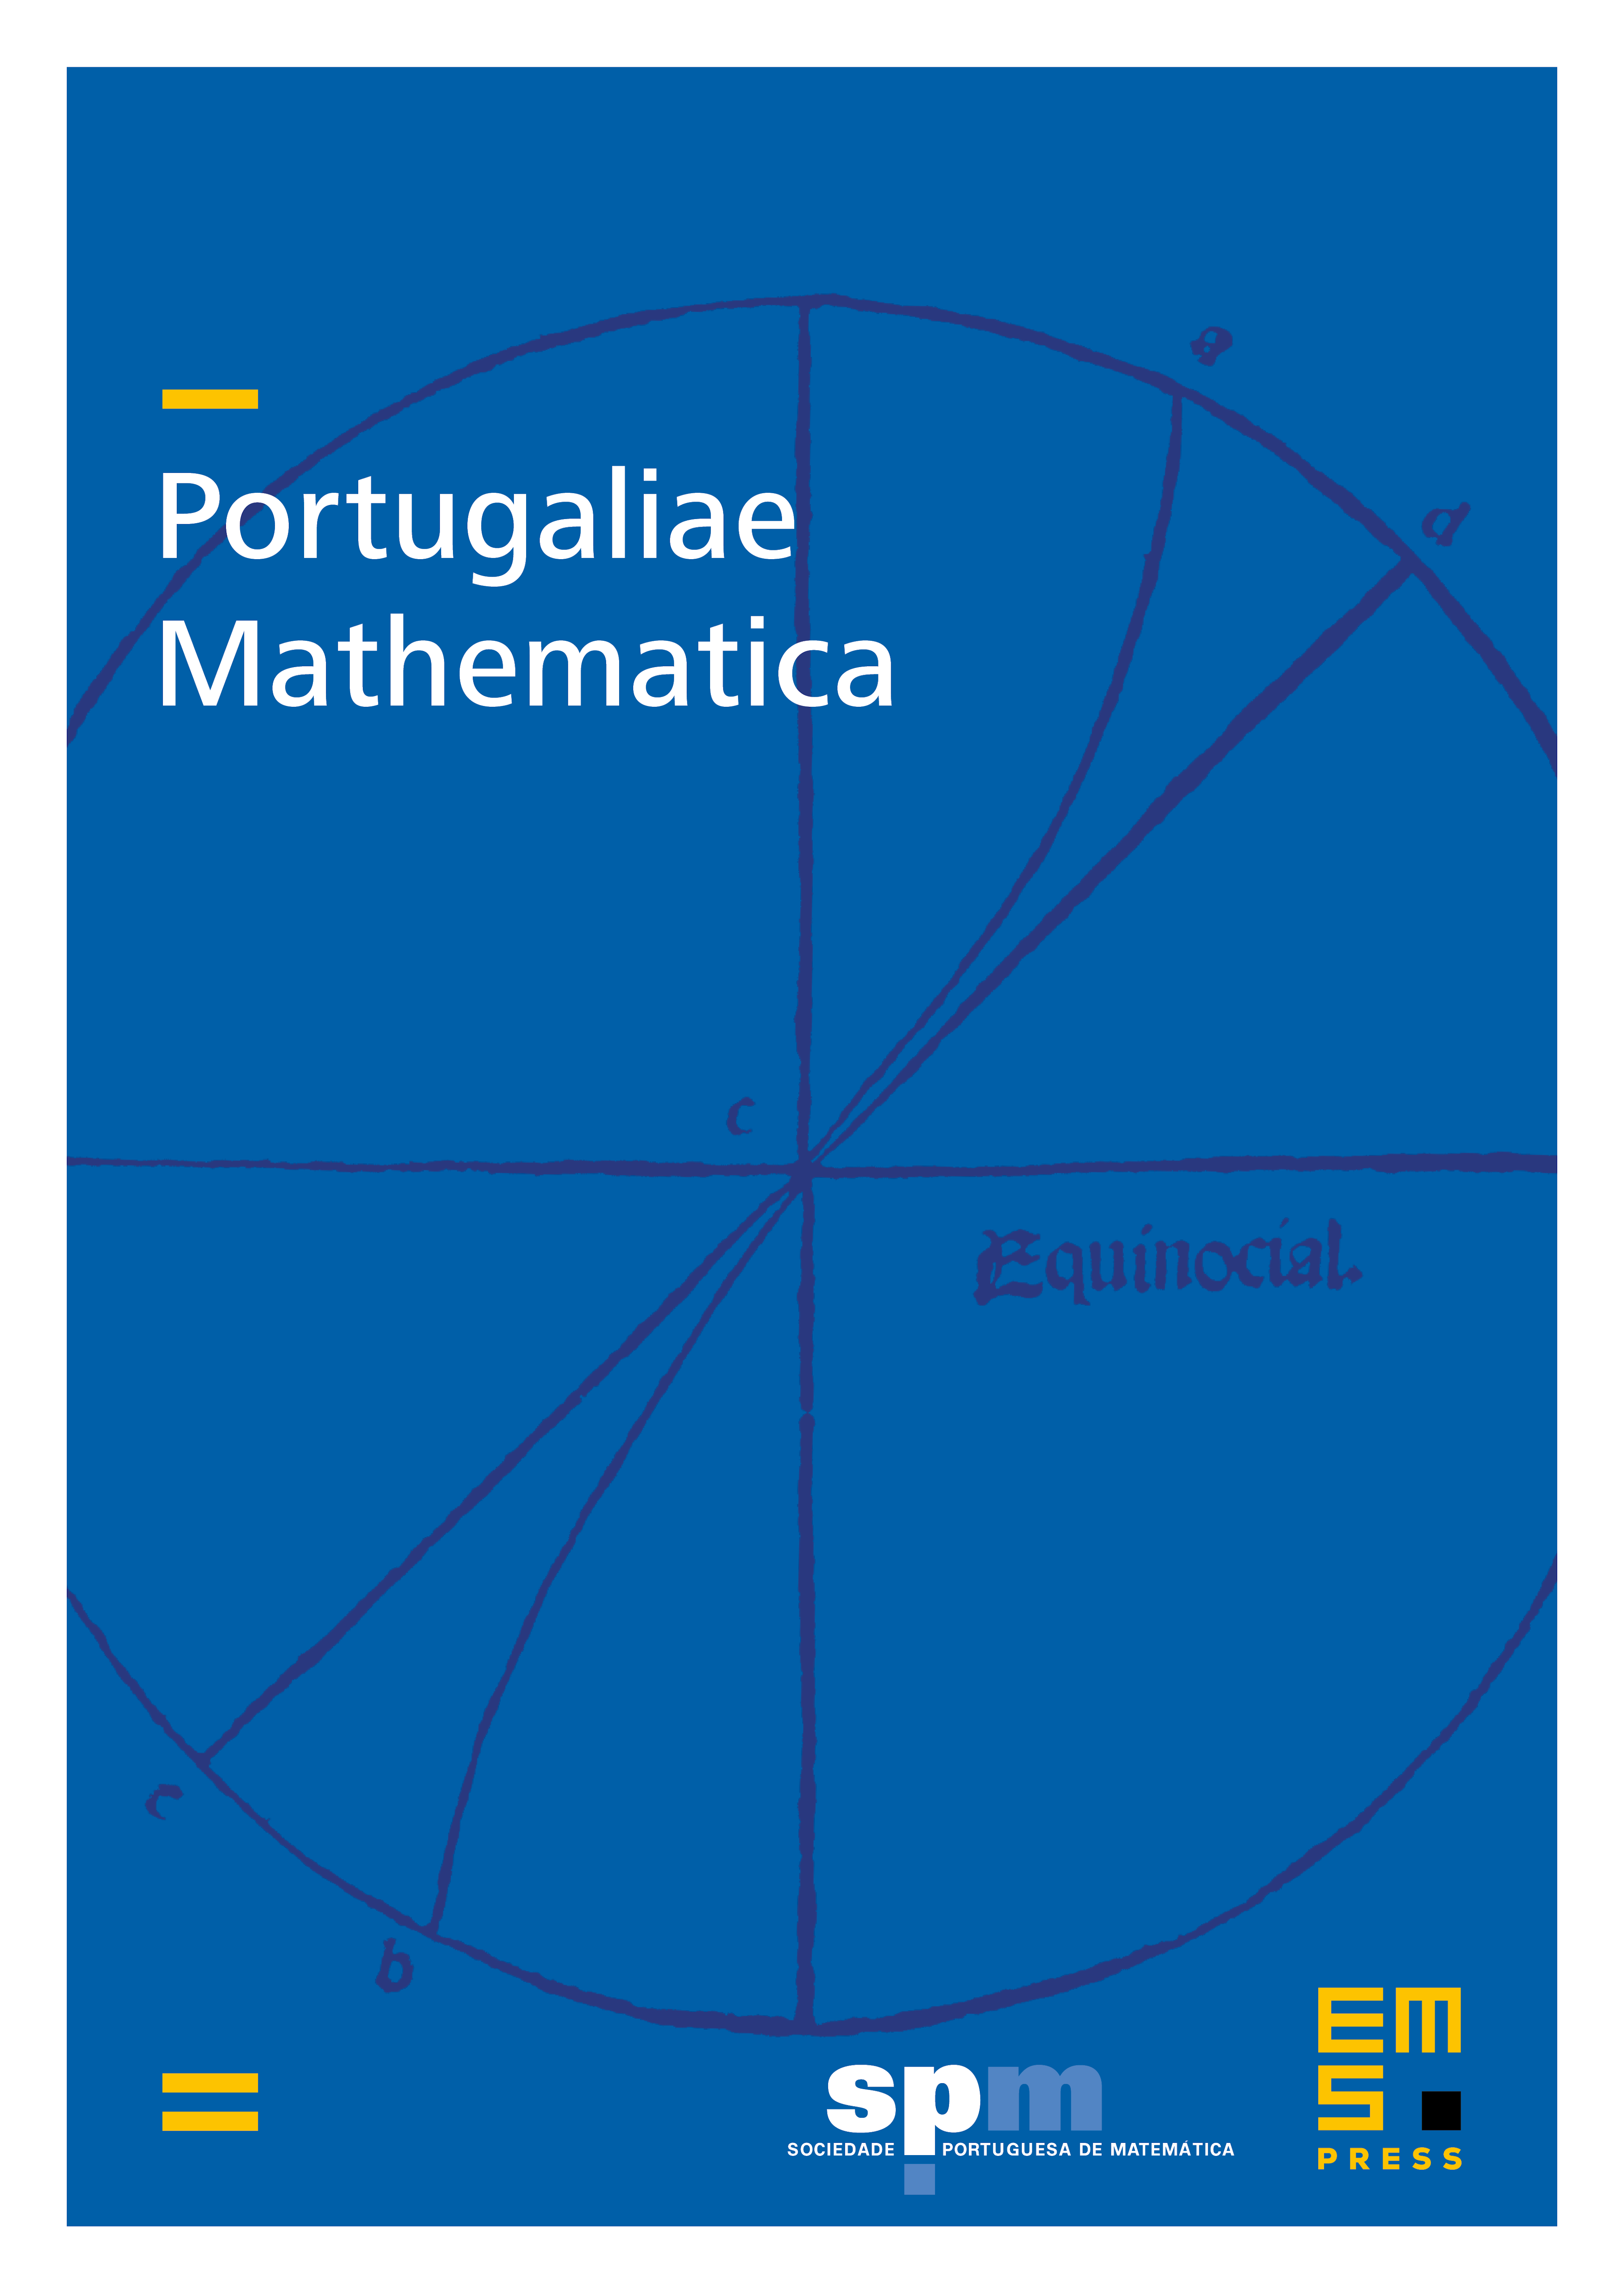 Portugaliae Mathematica cover